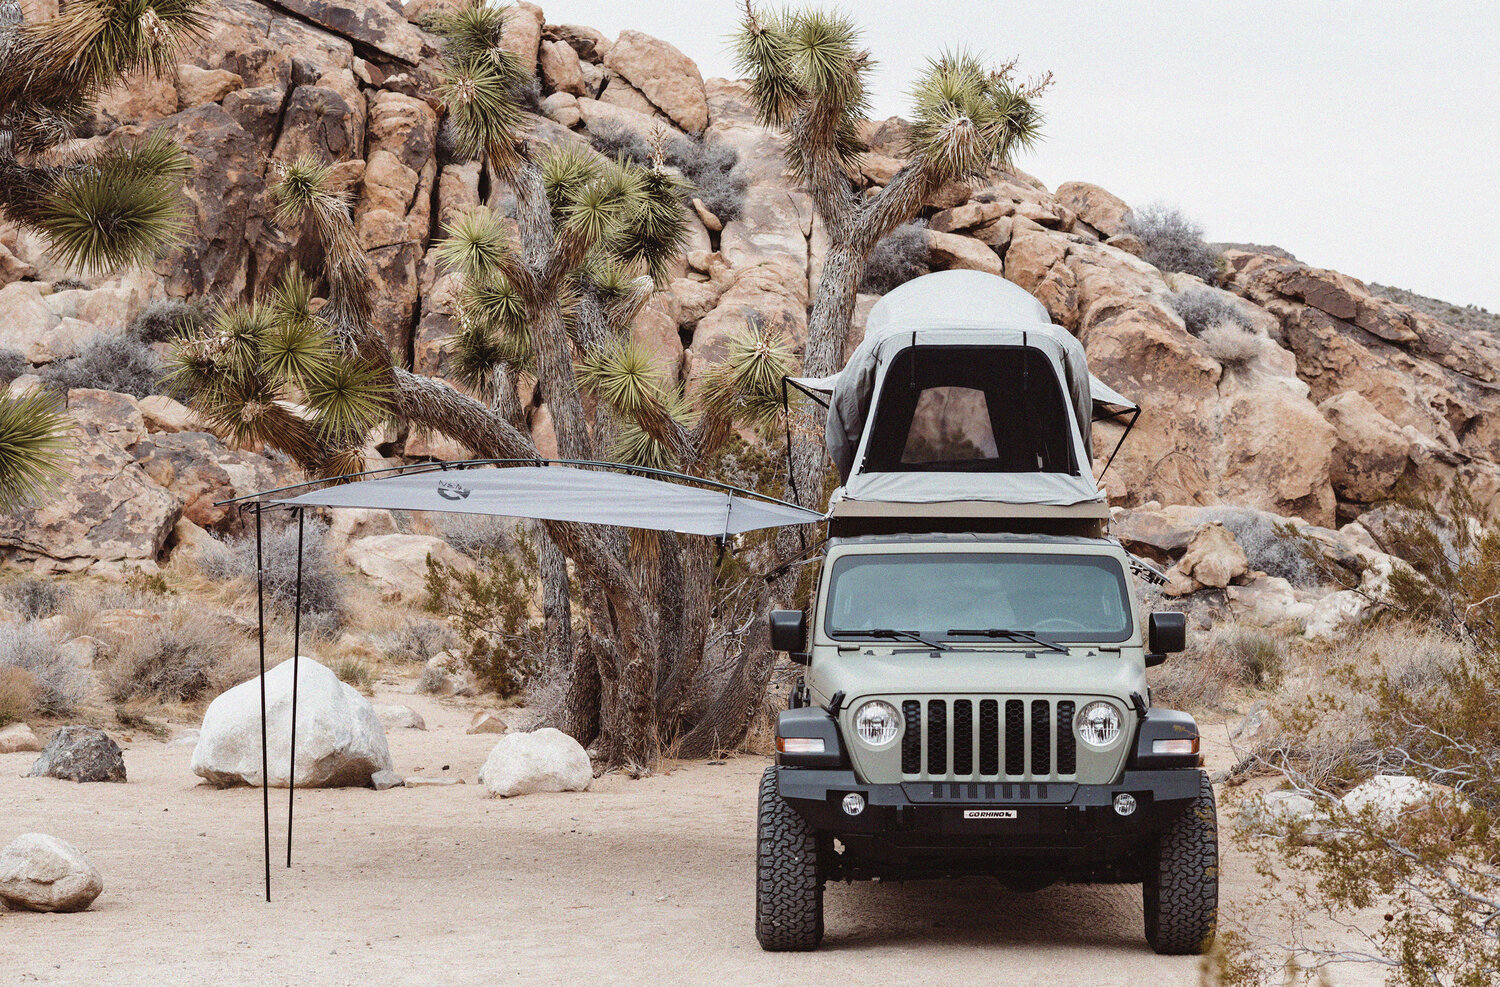 s-wc-safari-20-Jeep-Gladiator-4x4-campervan-camper-cartel-exterior-side-expanded.jpg